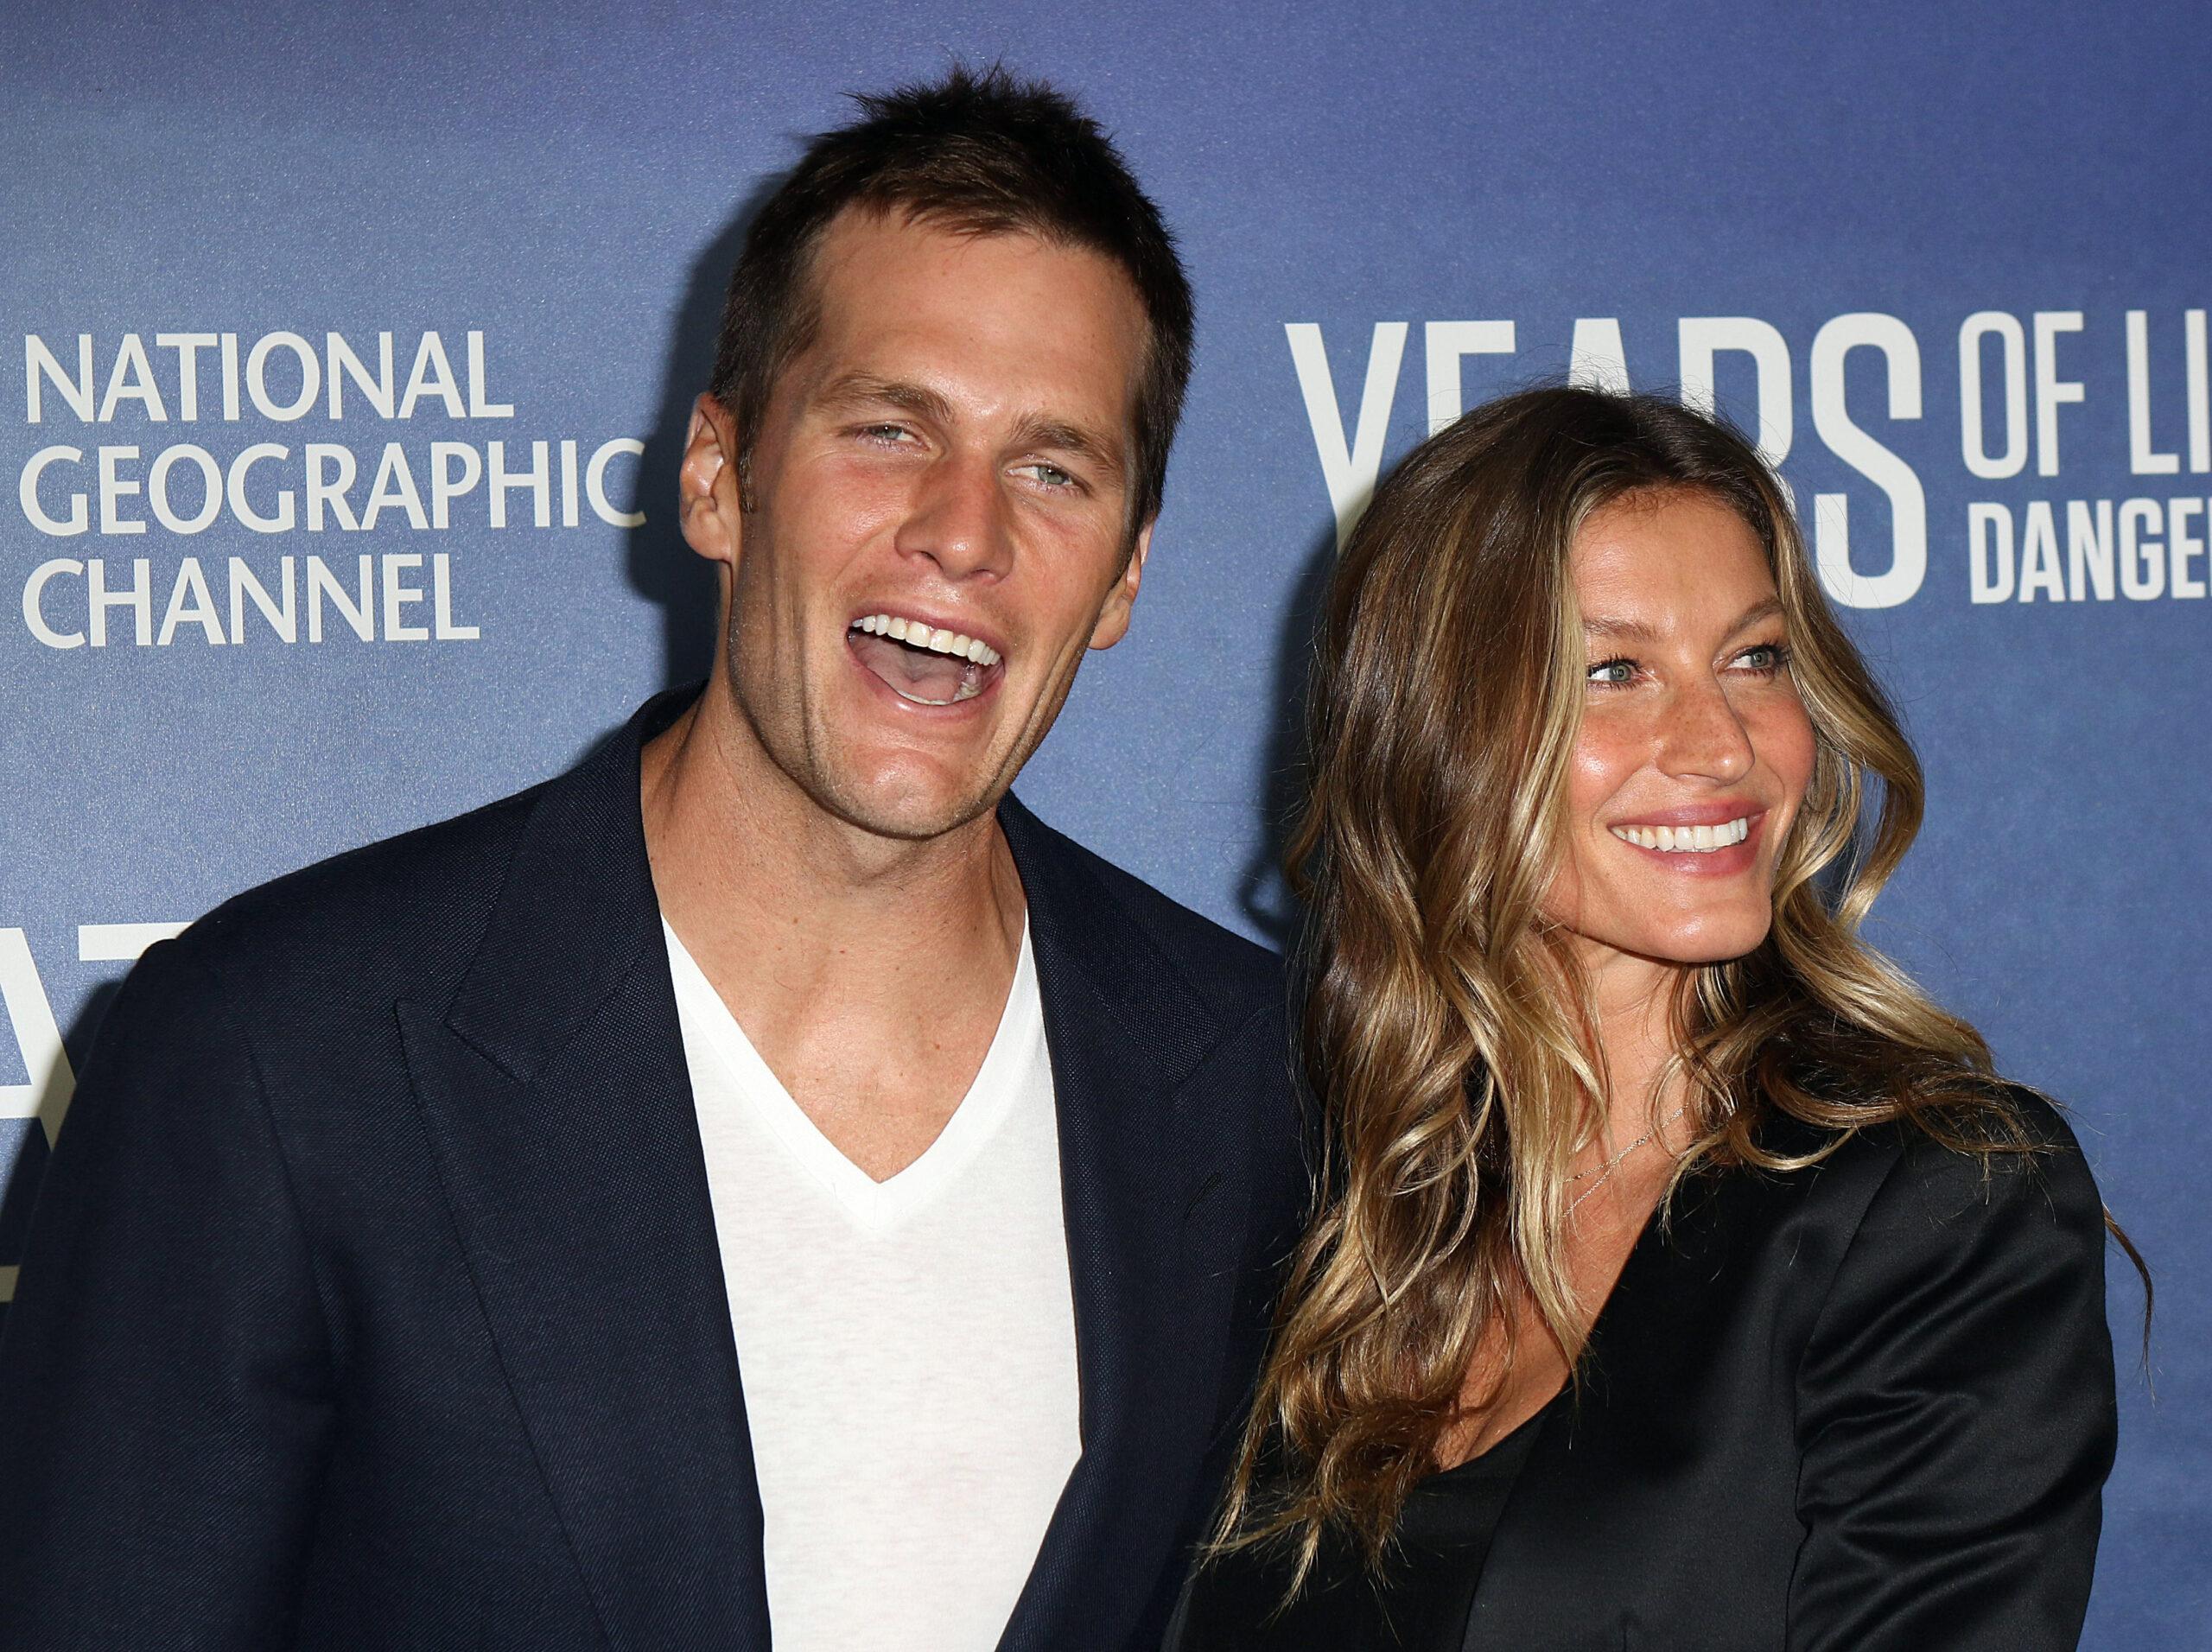 Gisele Bündchen And Tom Brady smiling